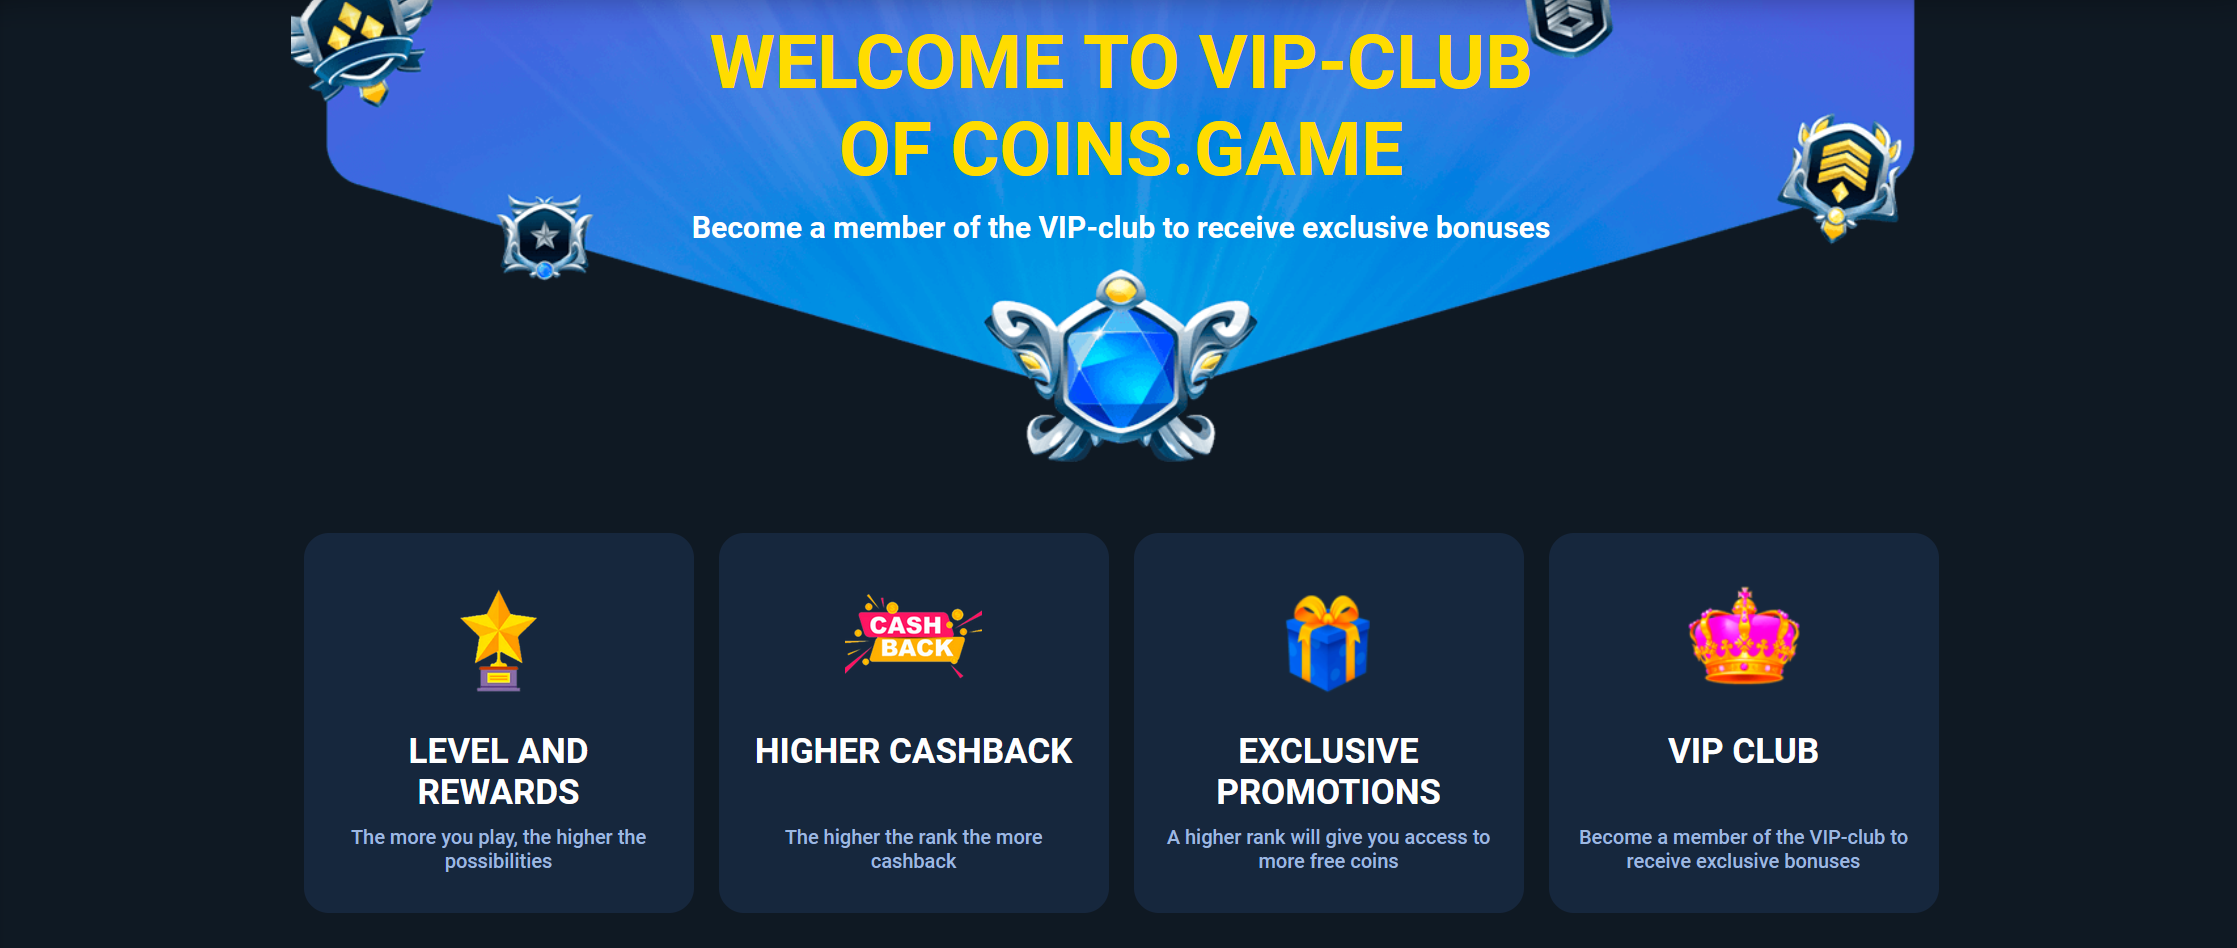 Coins Game VIP Club